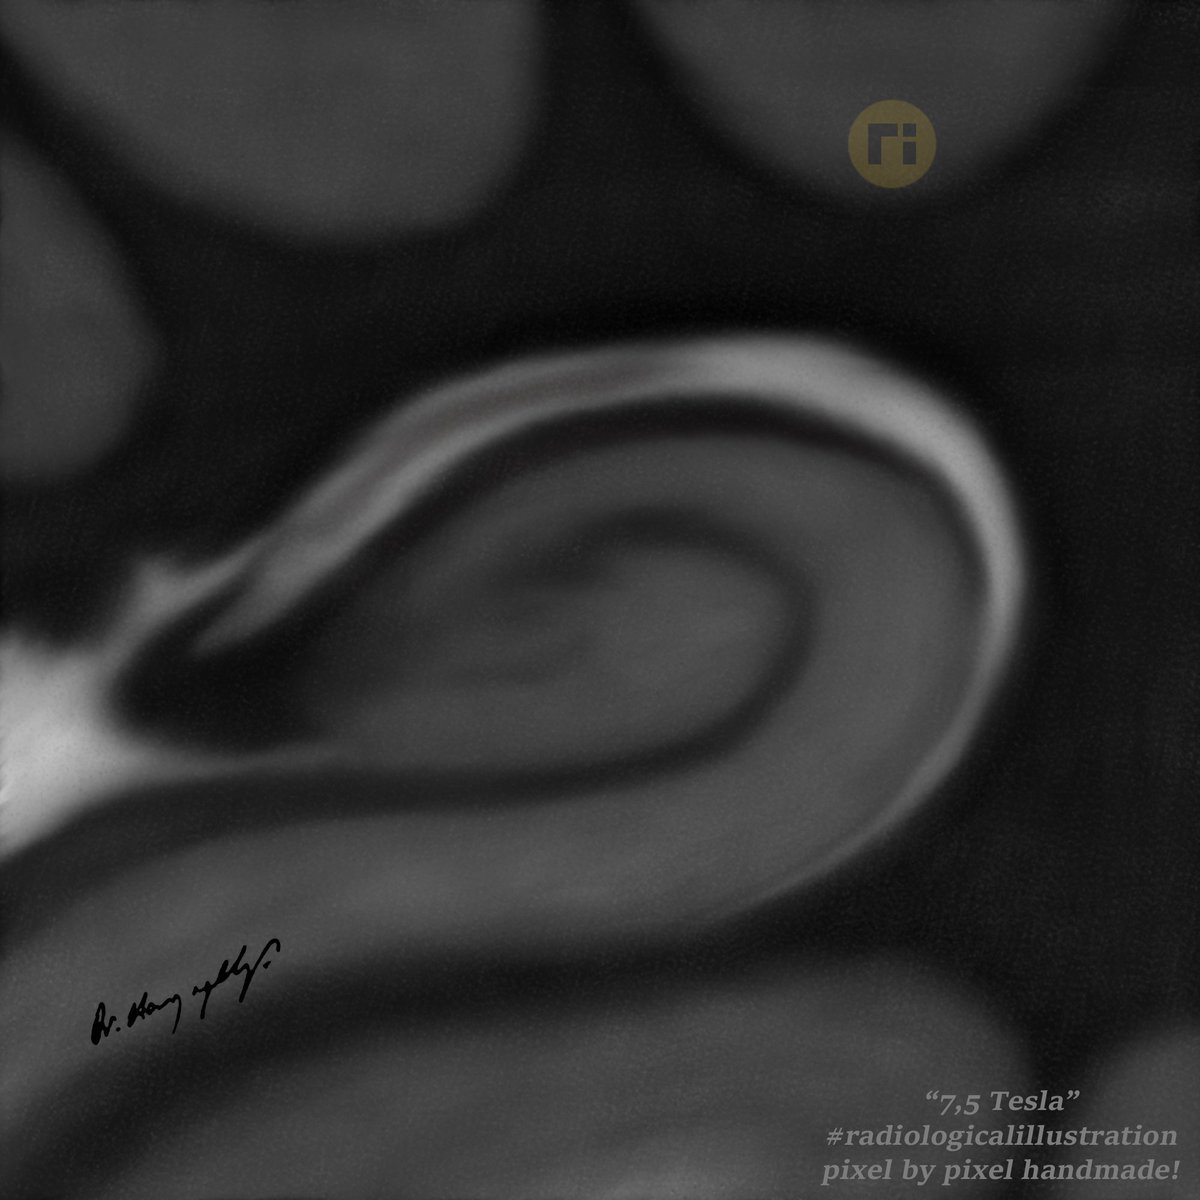 Hippocampal Formation #radiologicalillustration ✍️ pixel by pixel handmade!